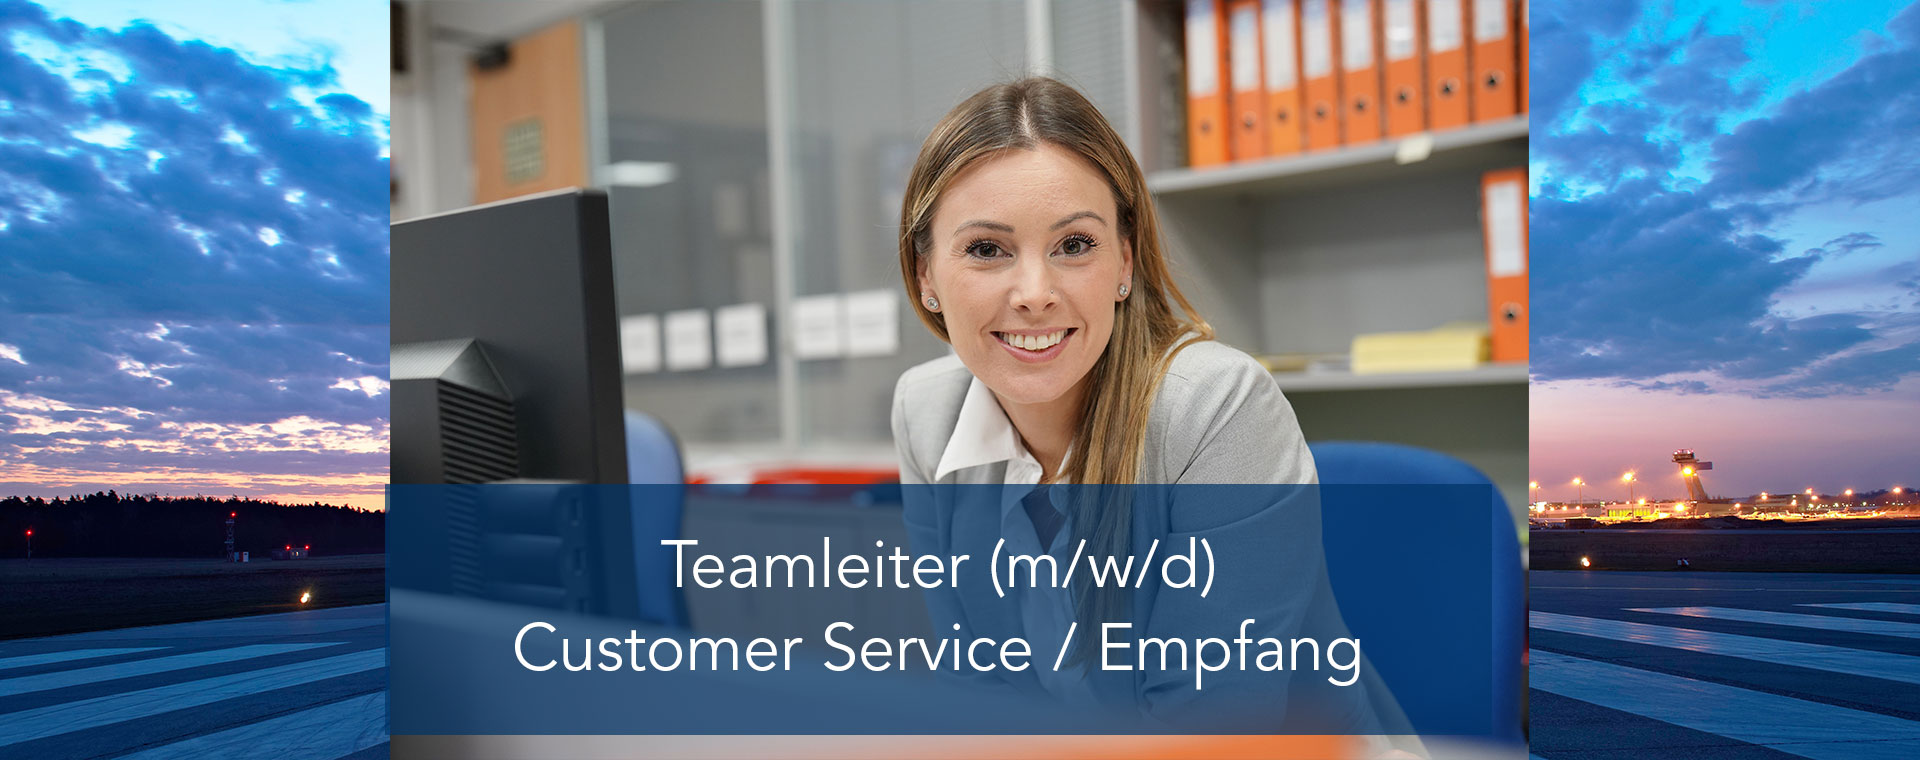 Teamleiter (m/w/d) Customer Service / Empfang | Aero-Dienst GmbH 